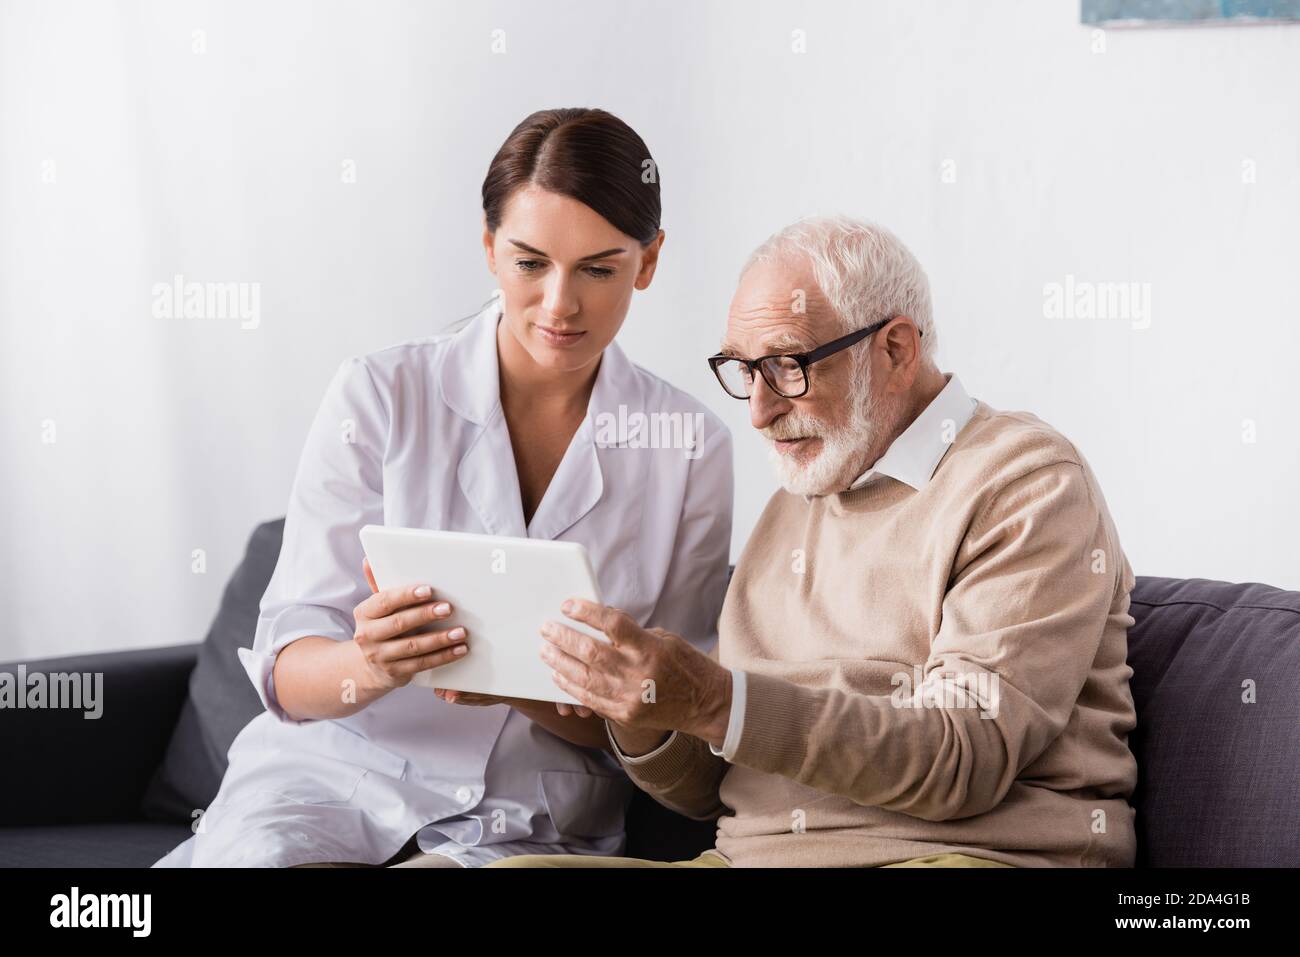 brunette geriatric nurse and elderly man using digital tablet together Stock Photo